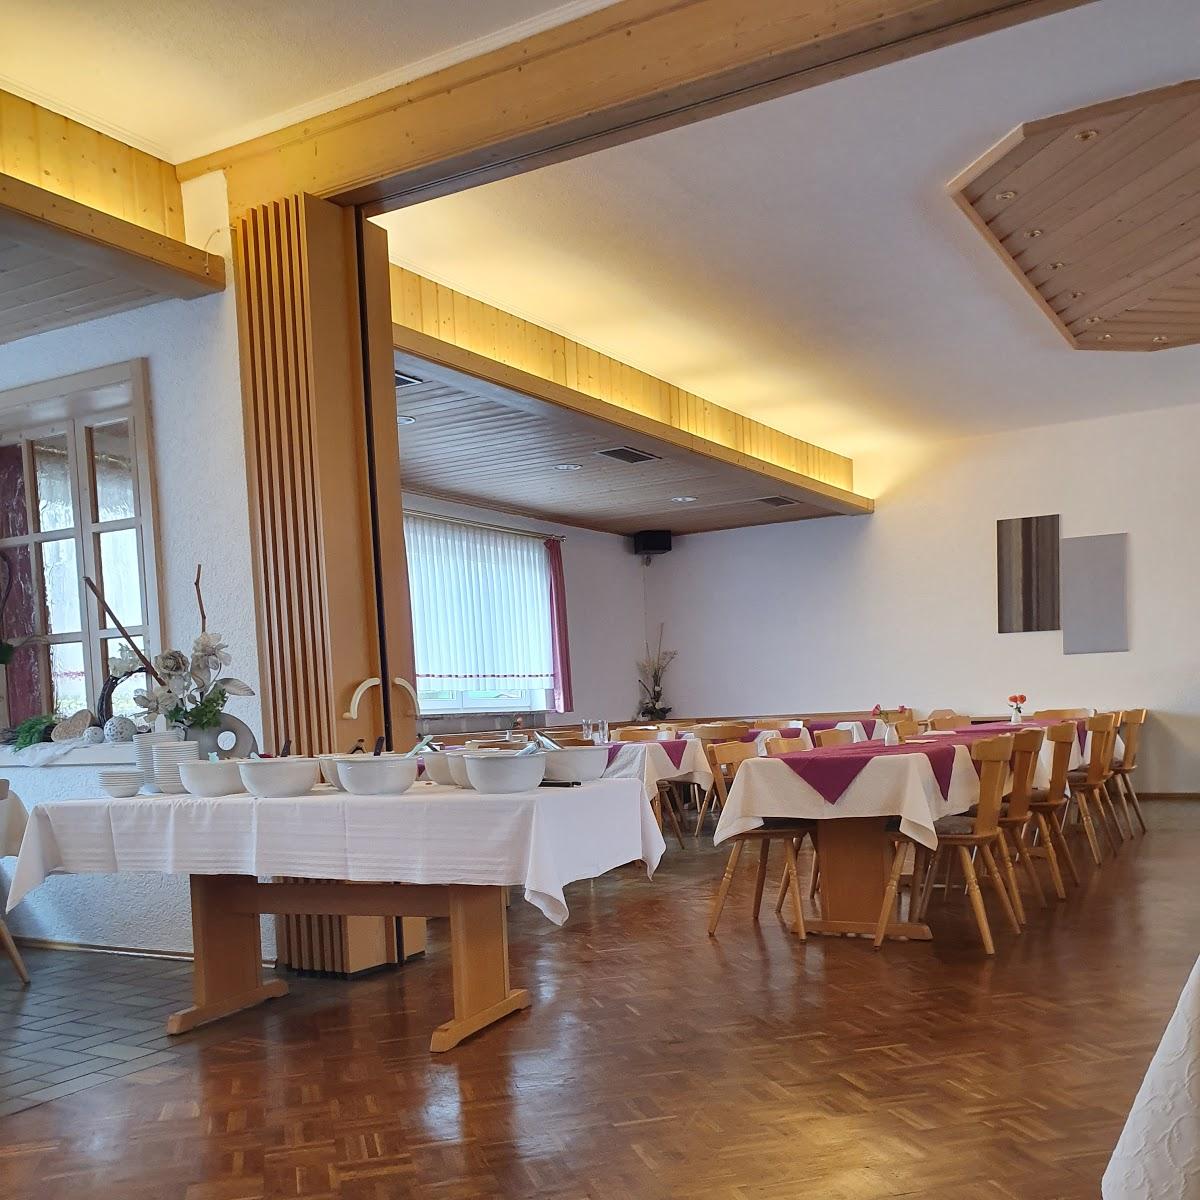 Restaurant "Gasthaus Stark" in Schwarzenbach